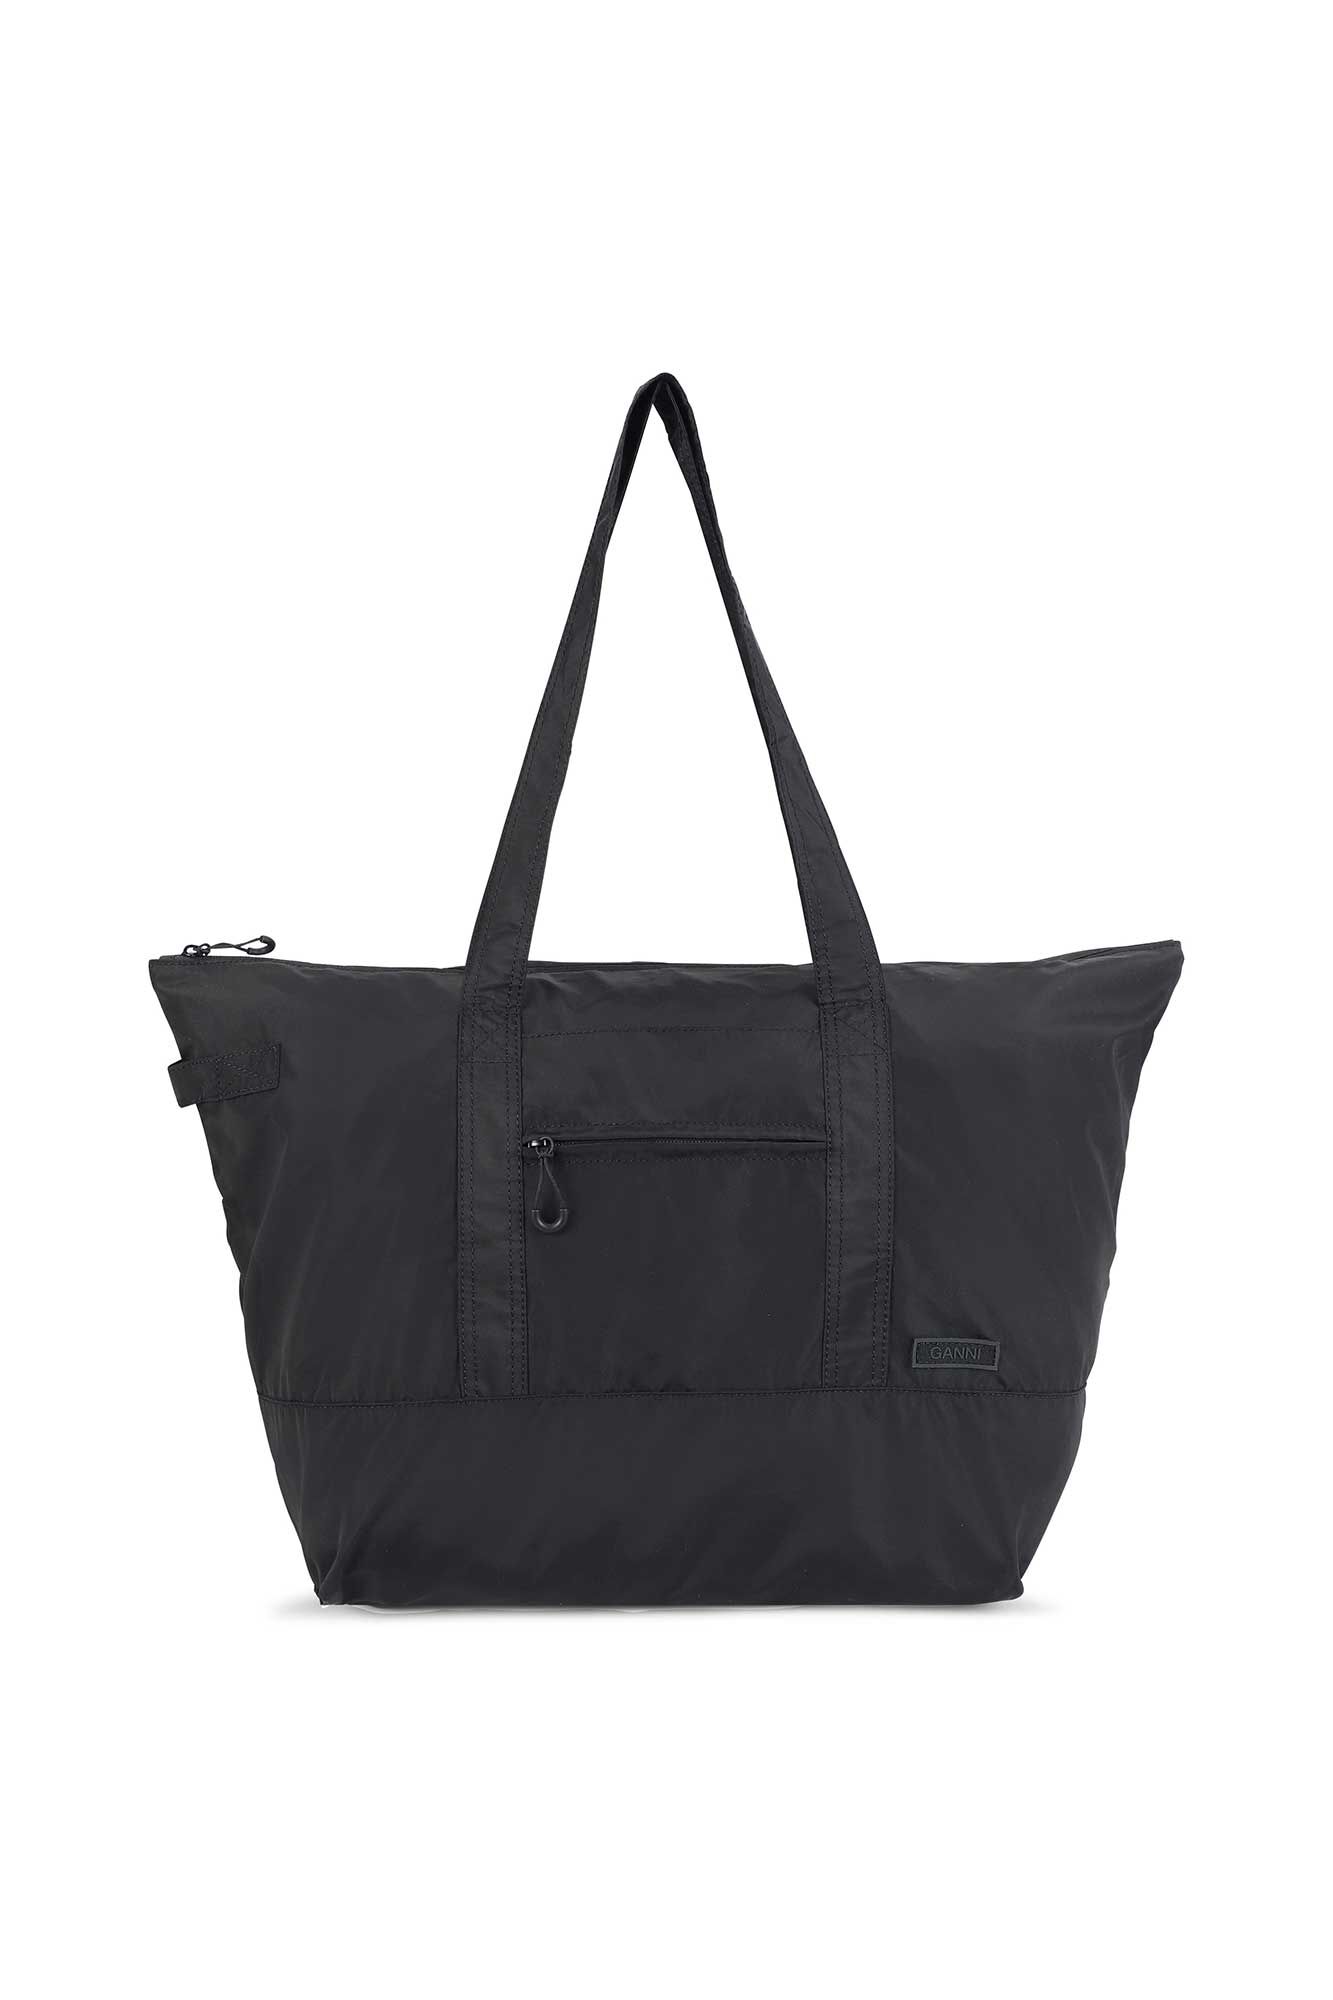 Black Sturdy Tote Bag